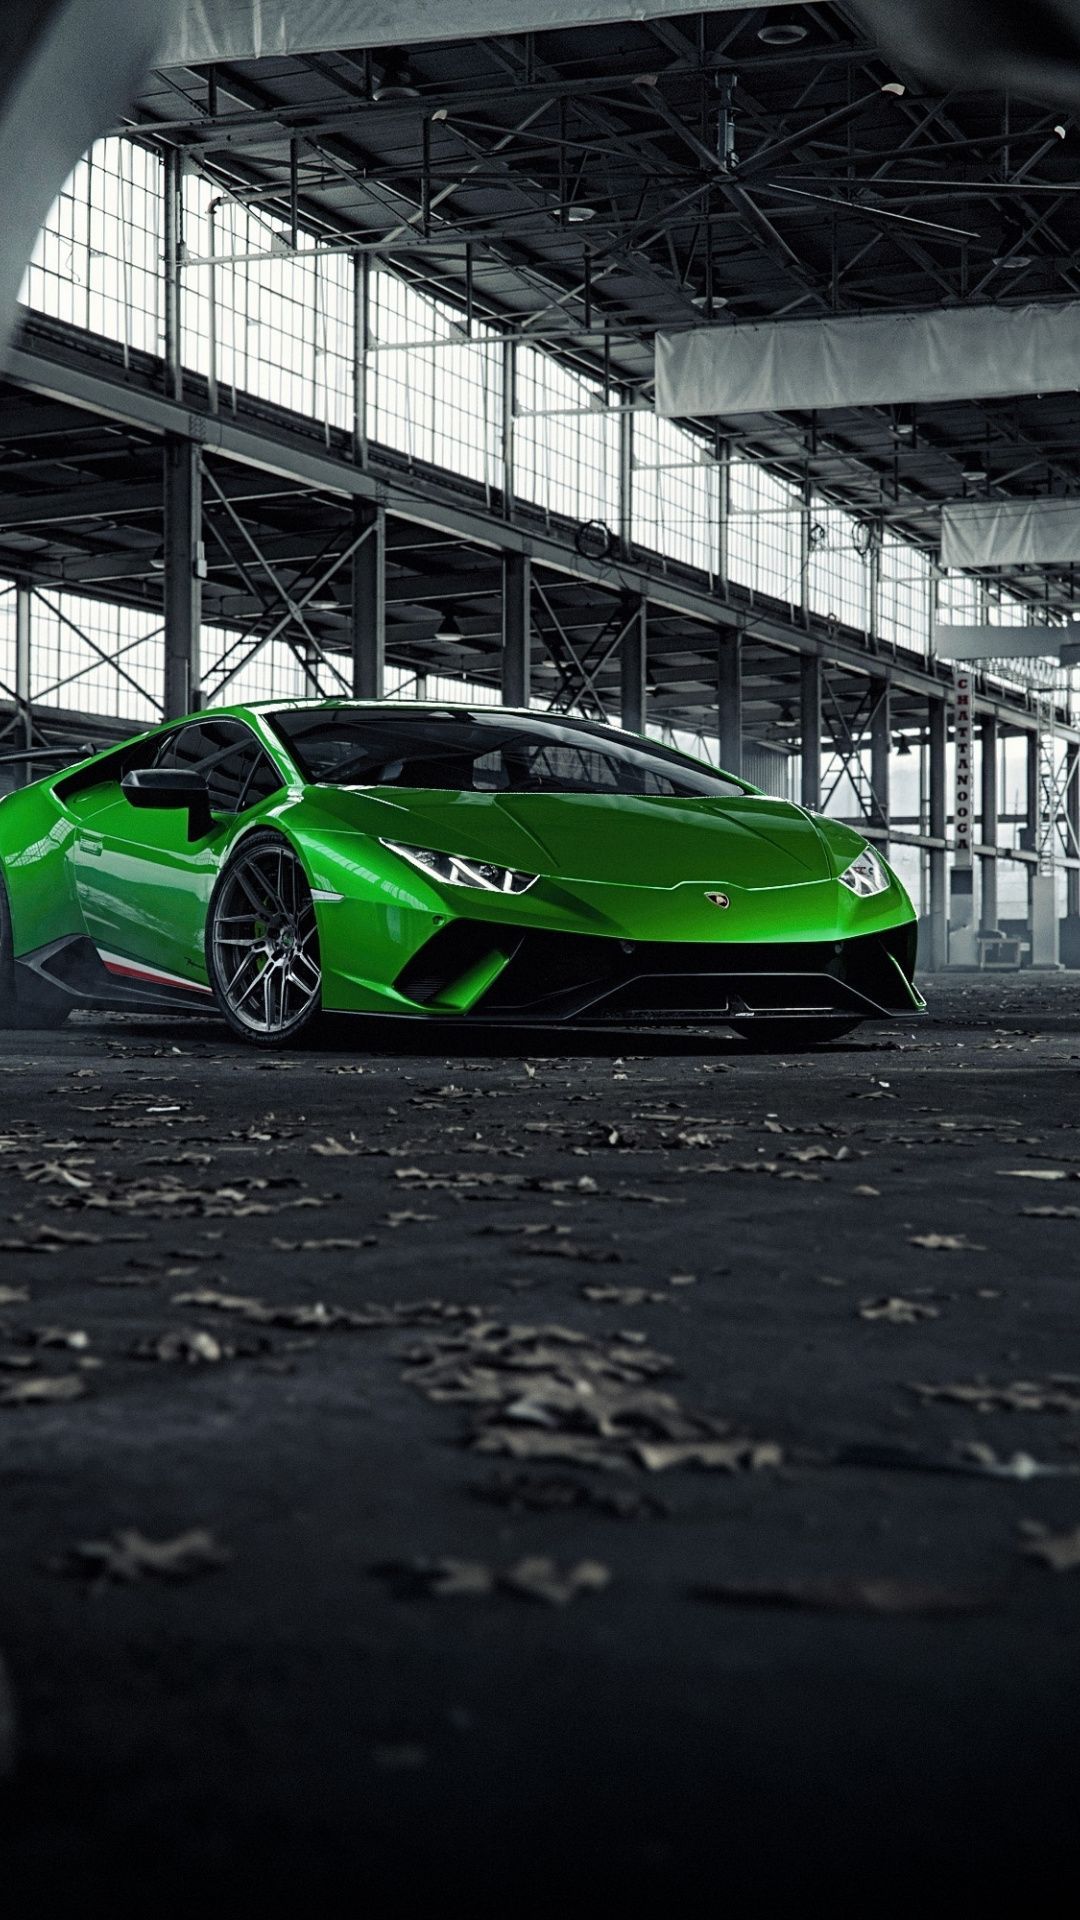 Green Lamborghini Huracan, sports car wallpaper. Green lamborghini, Car wallpaper, Lamborghini huracan